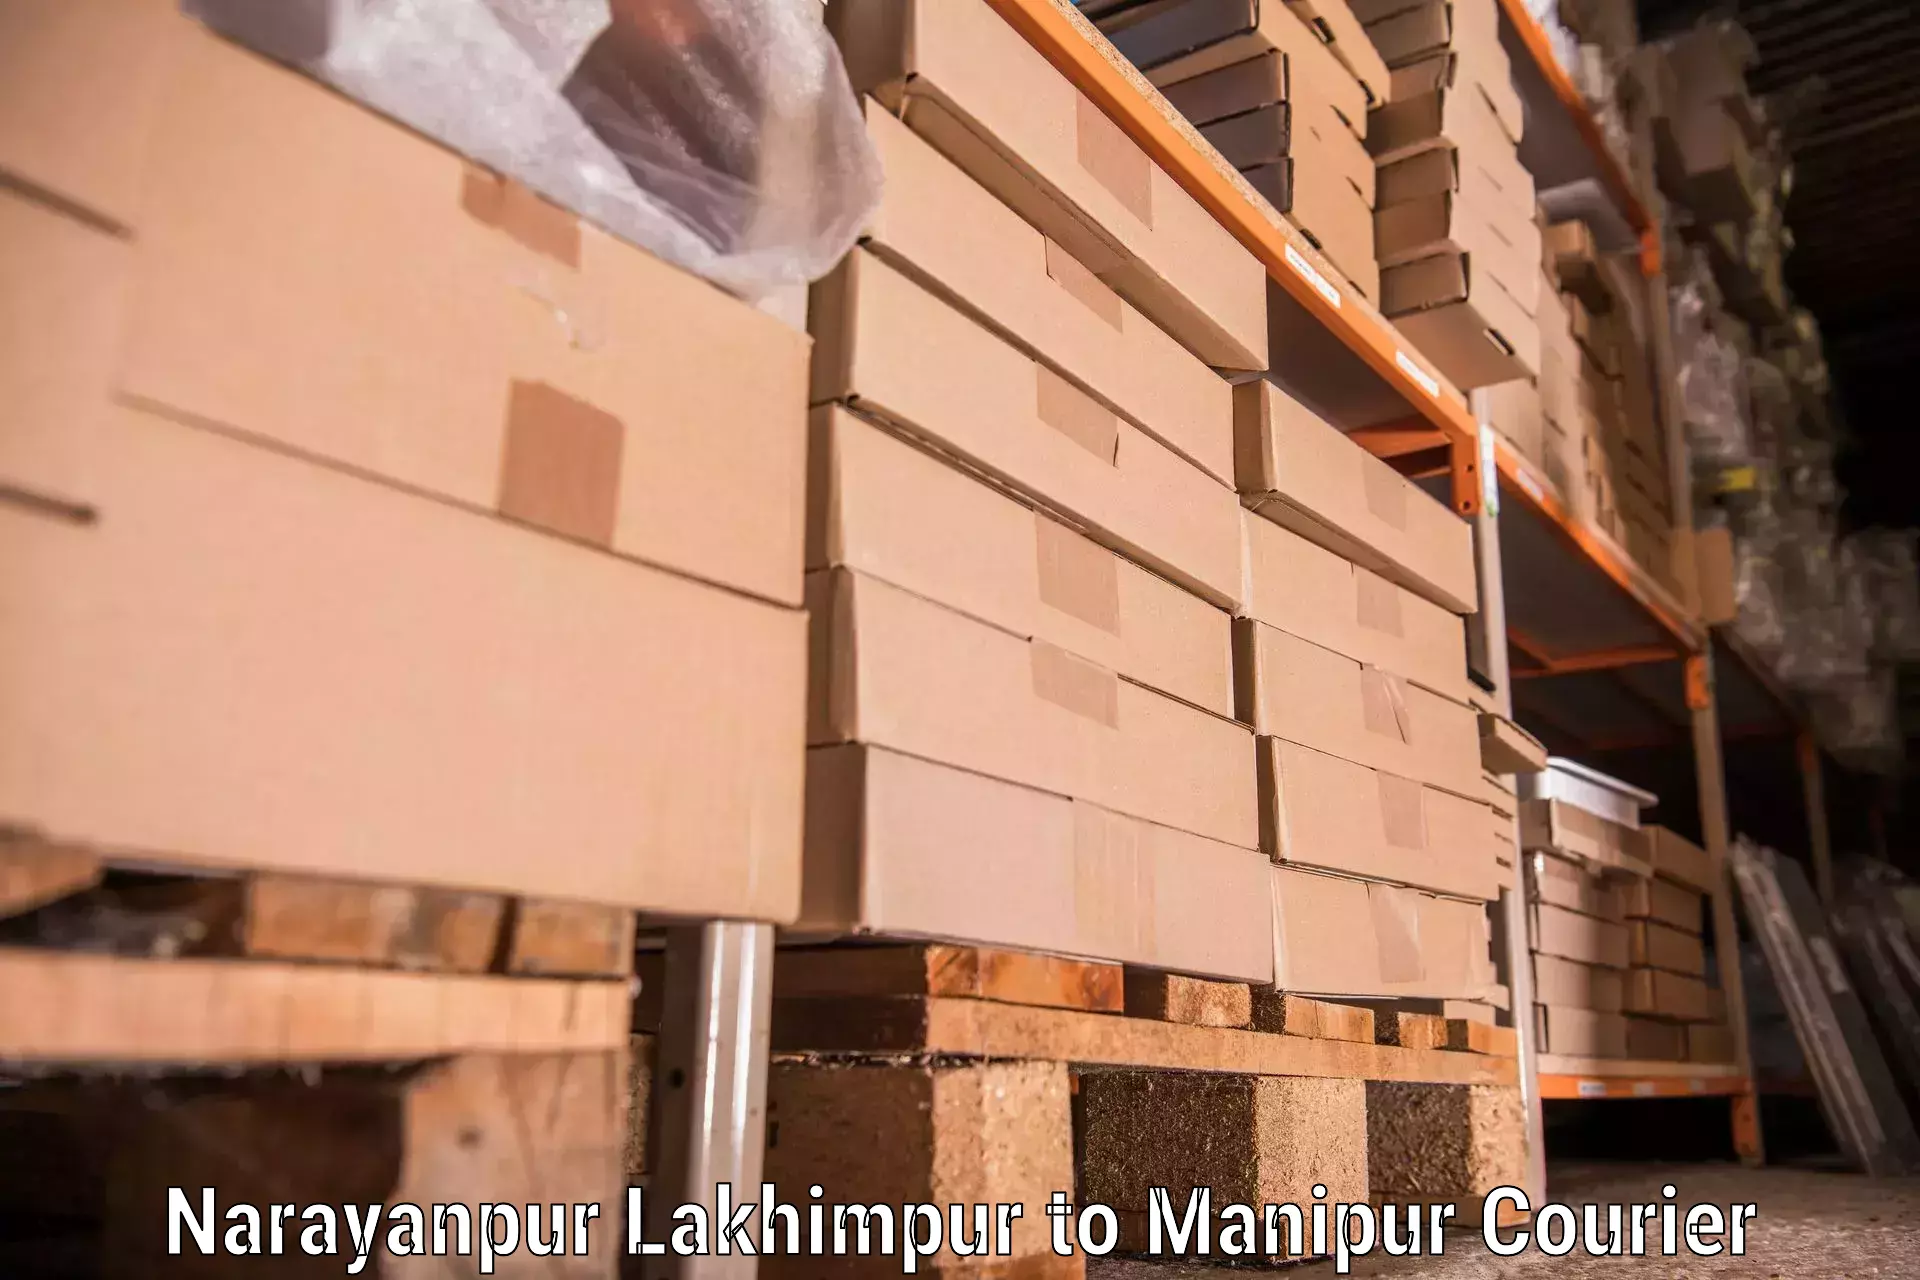 Furniture relocation experts Narayanpur Lakhimpur to Jiribam